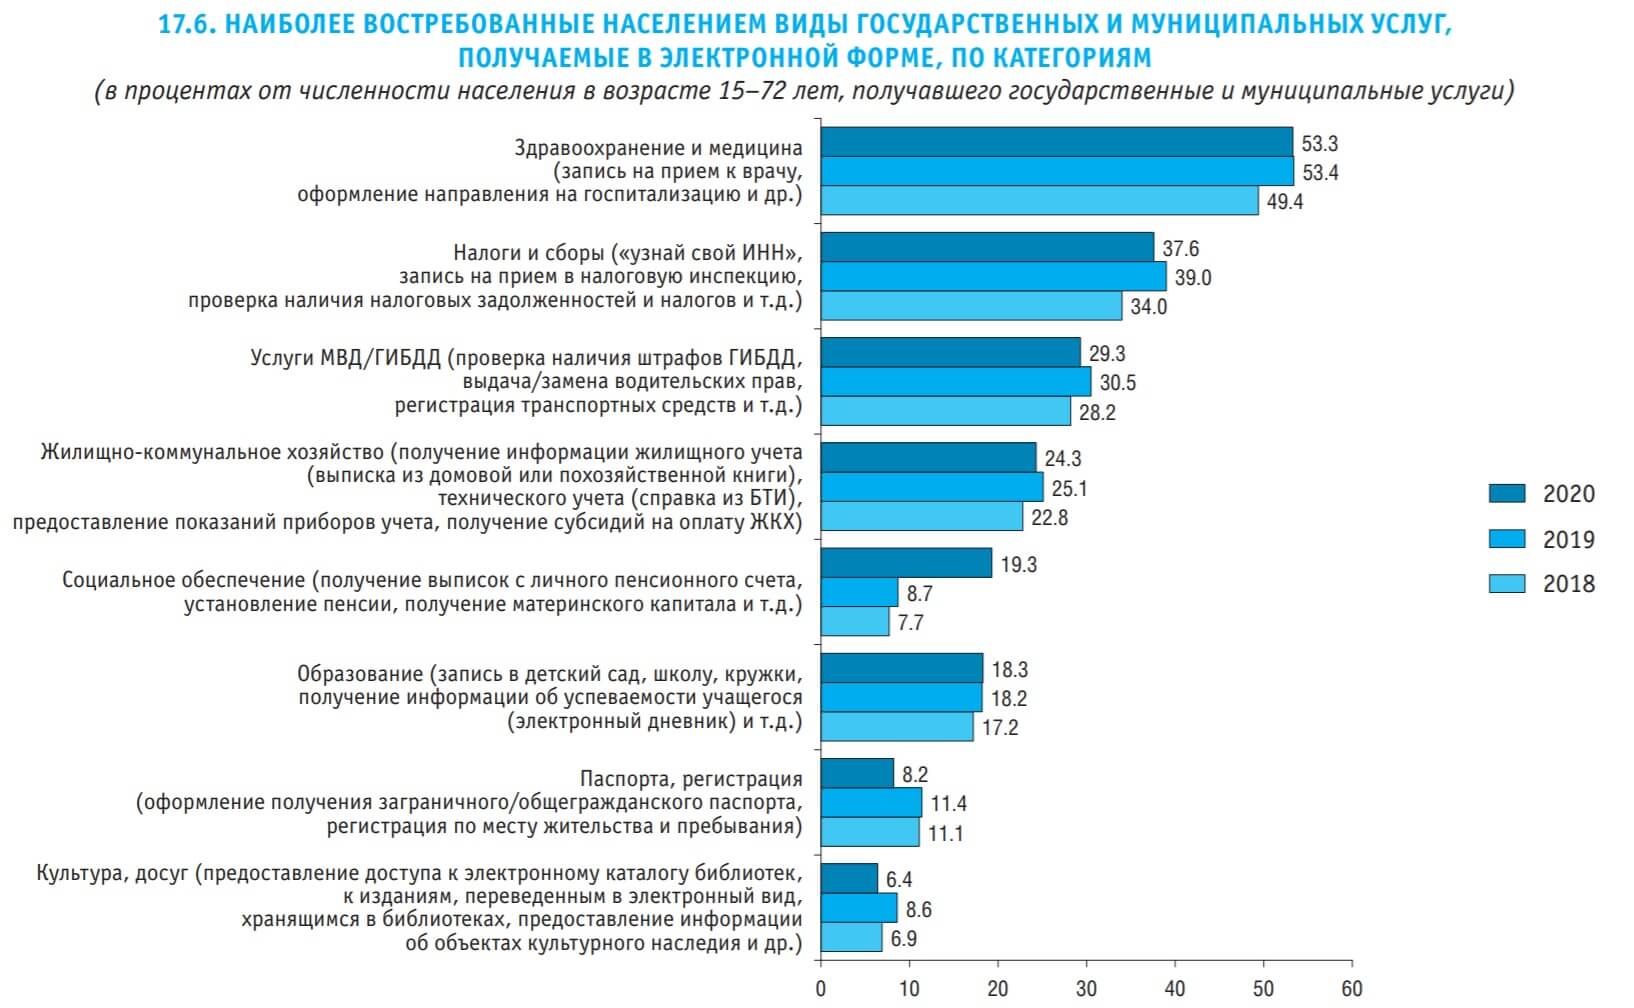 популярные электронные госуслуги в России